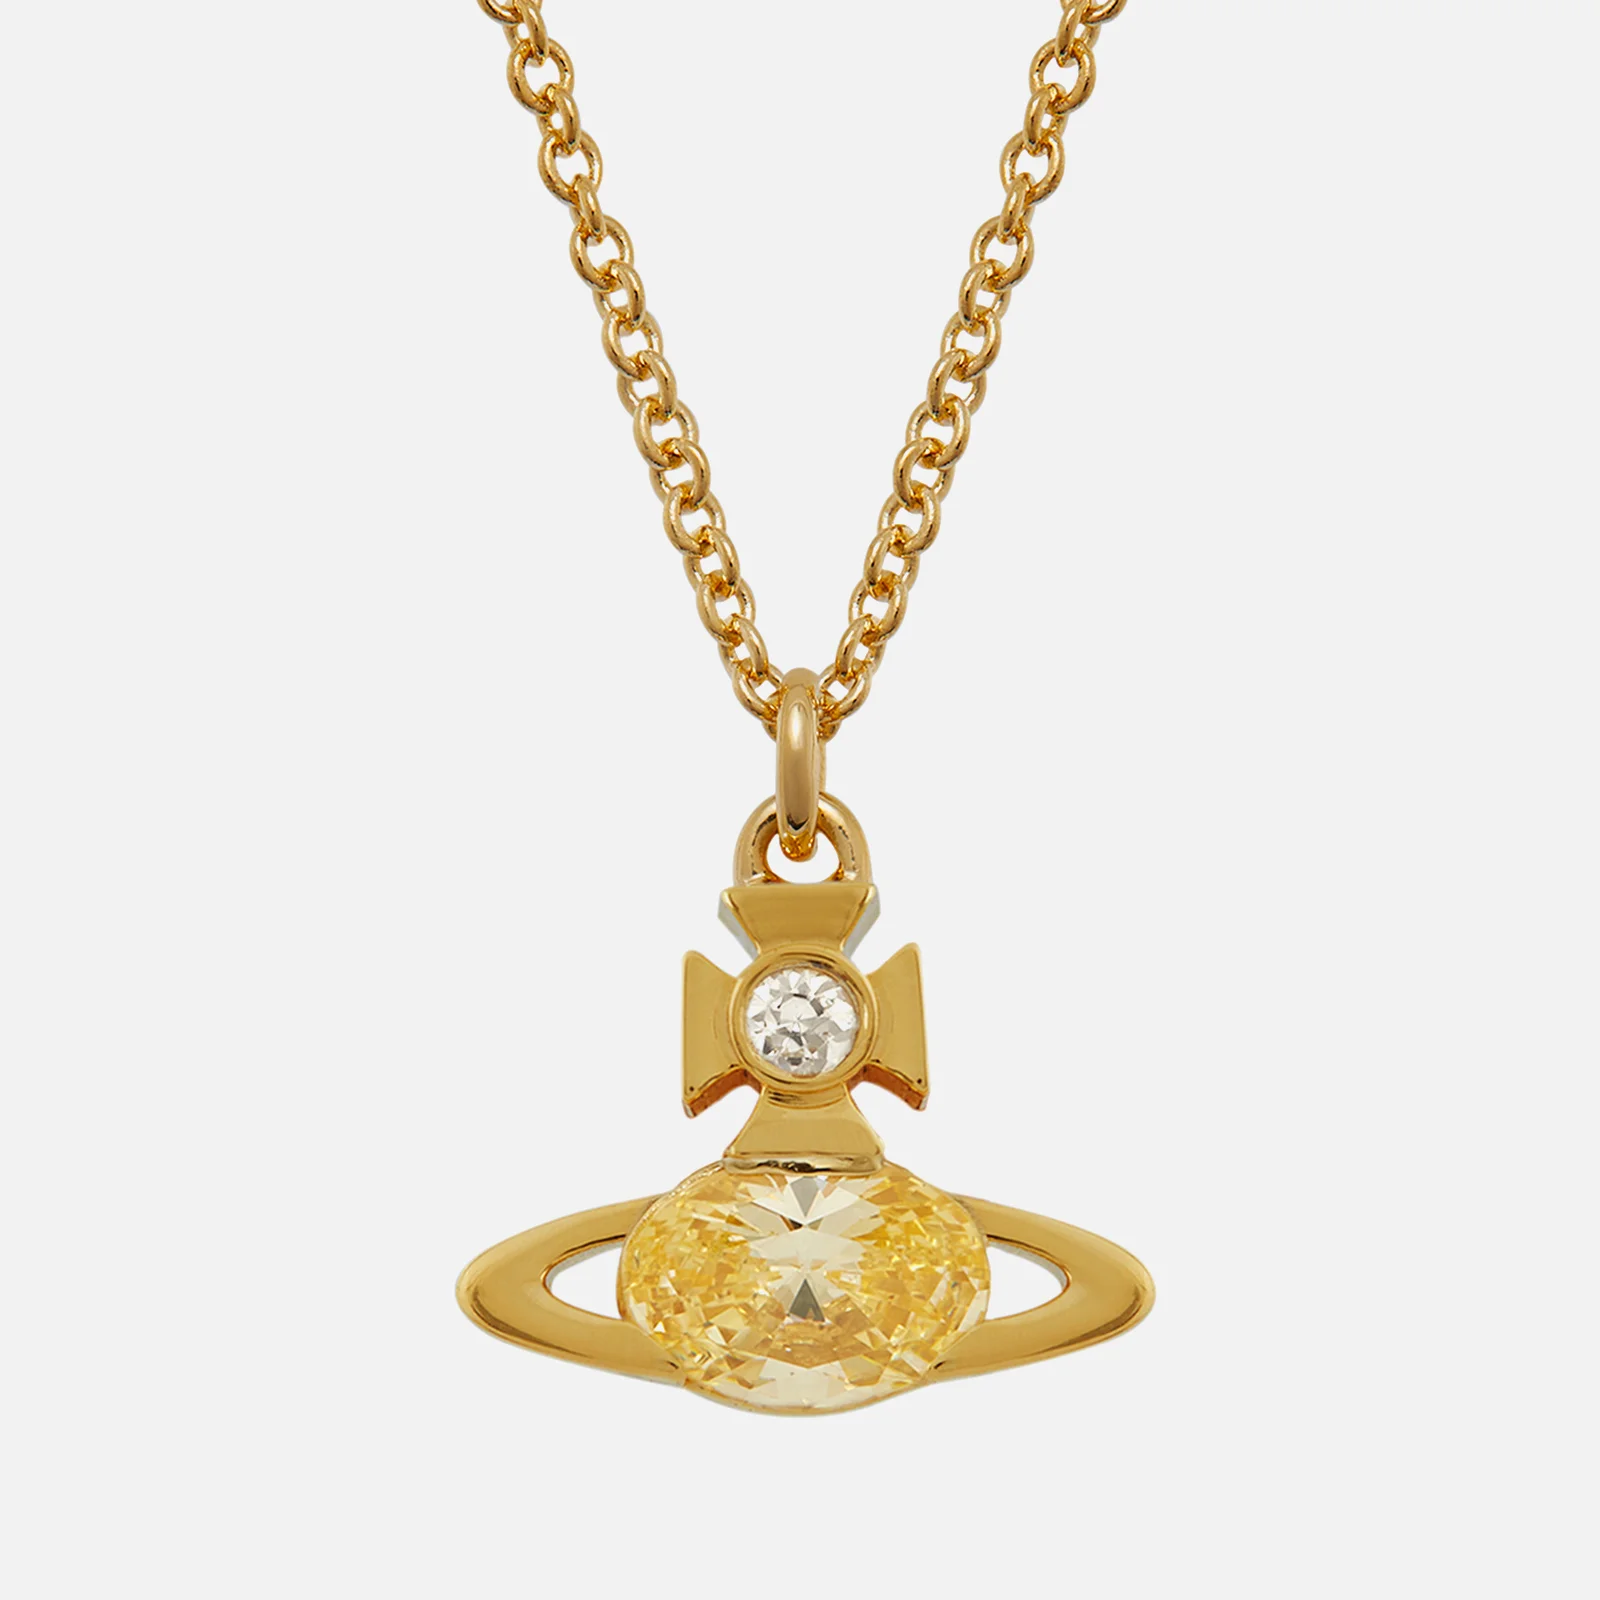 Vivienne Westwood Allie Gold Tone Pendant Necklace Image 1